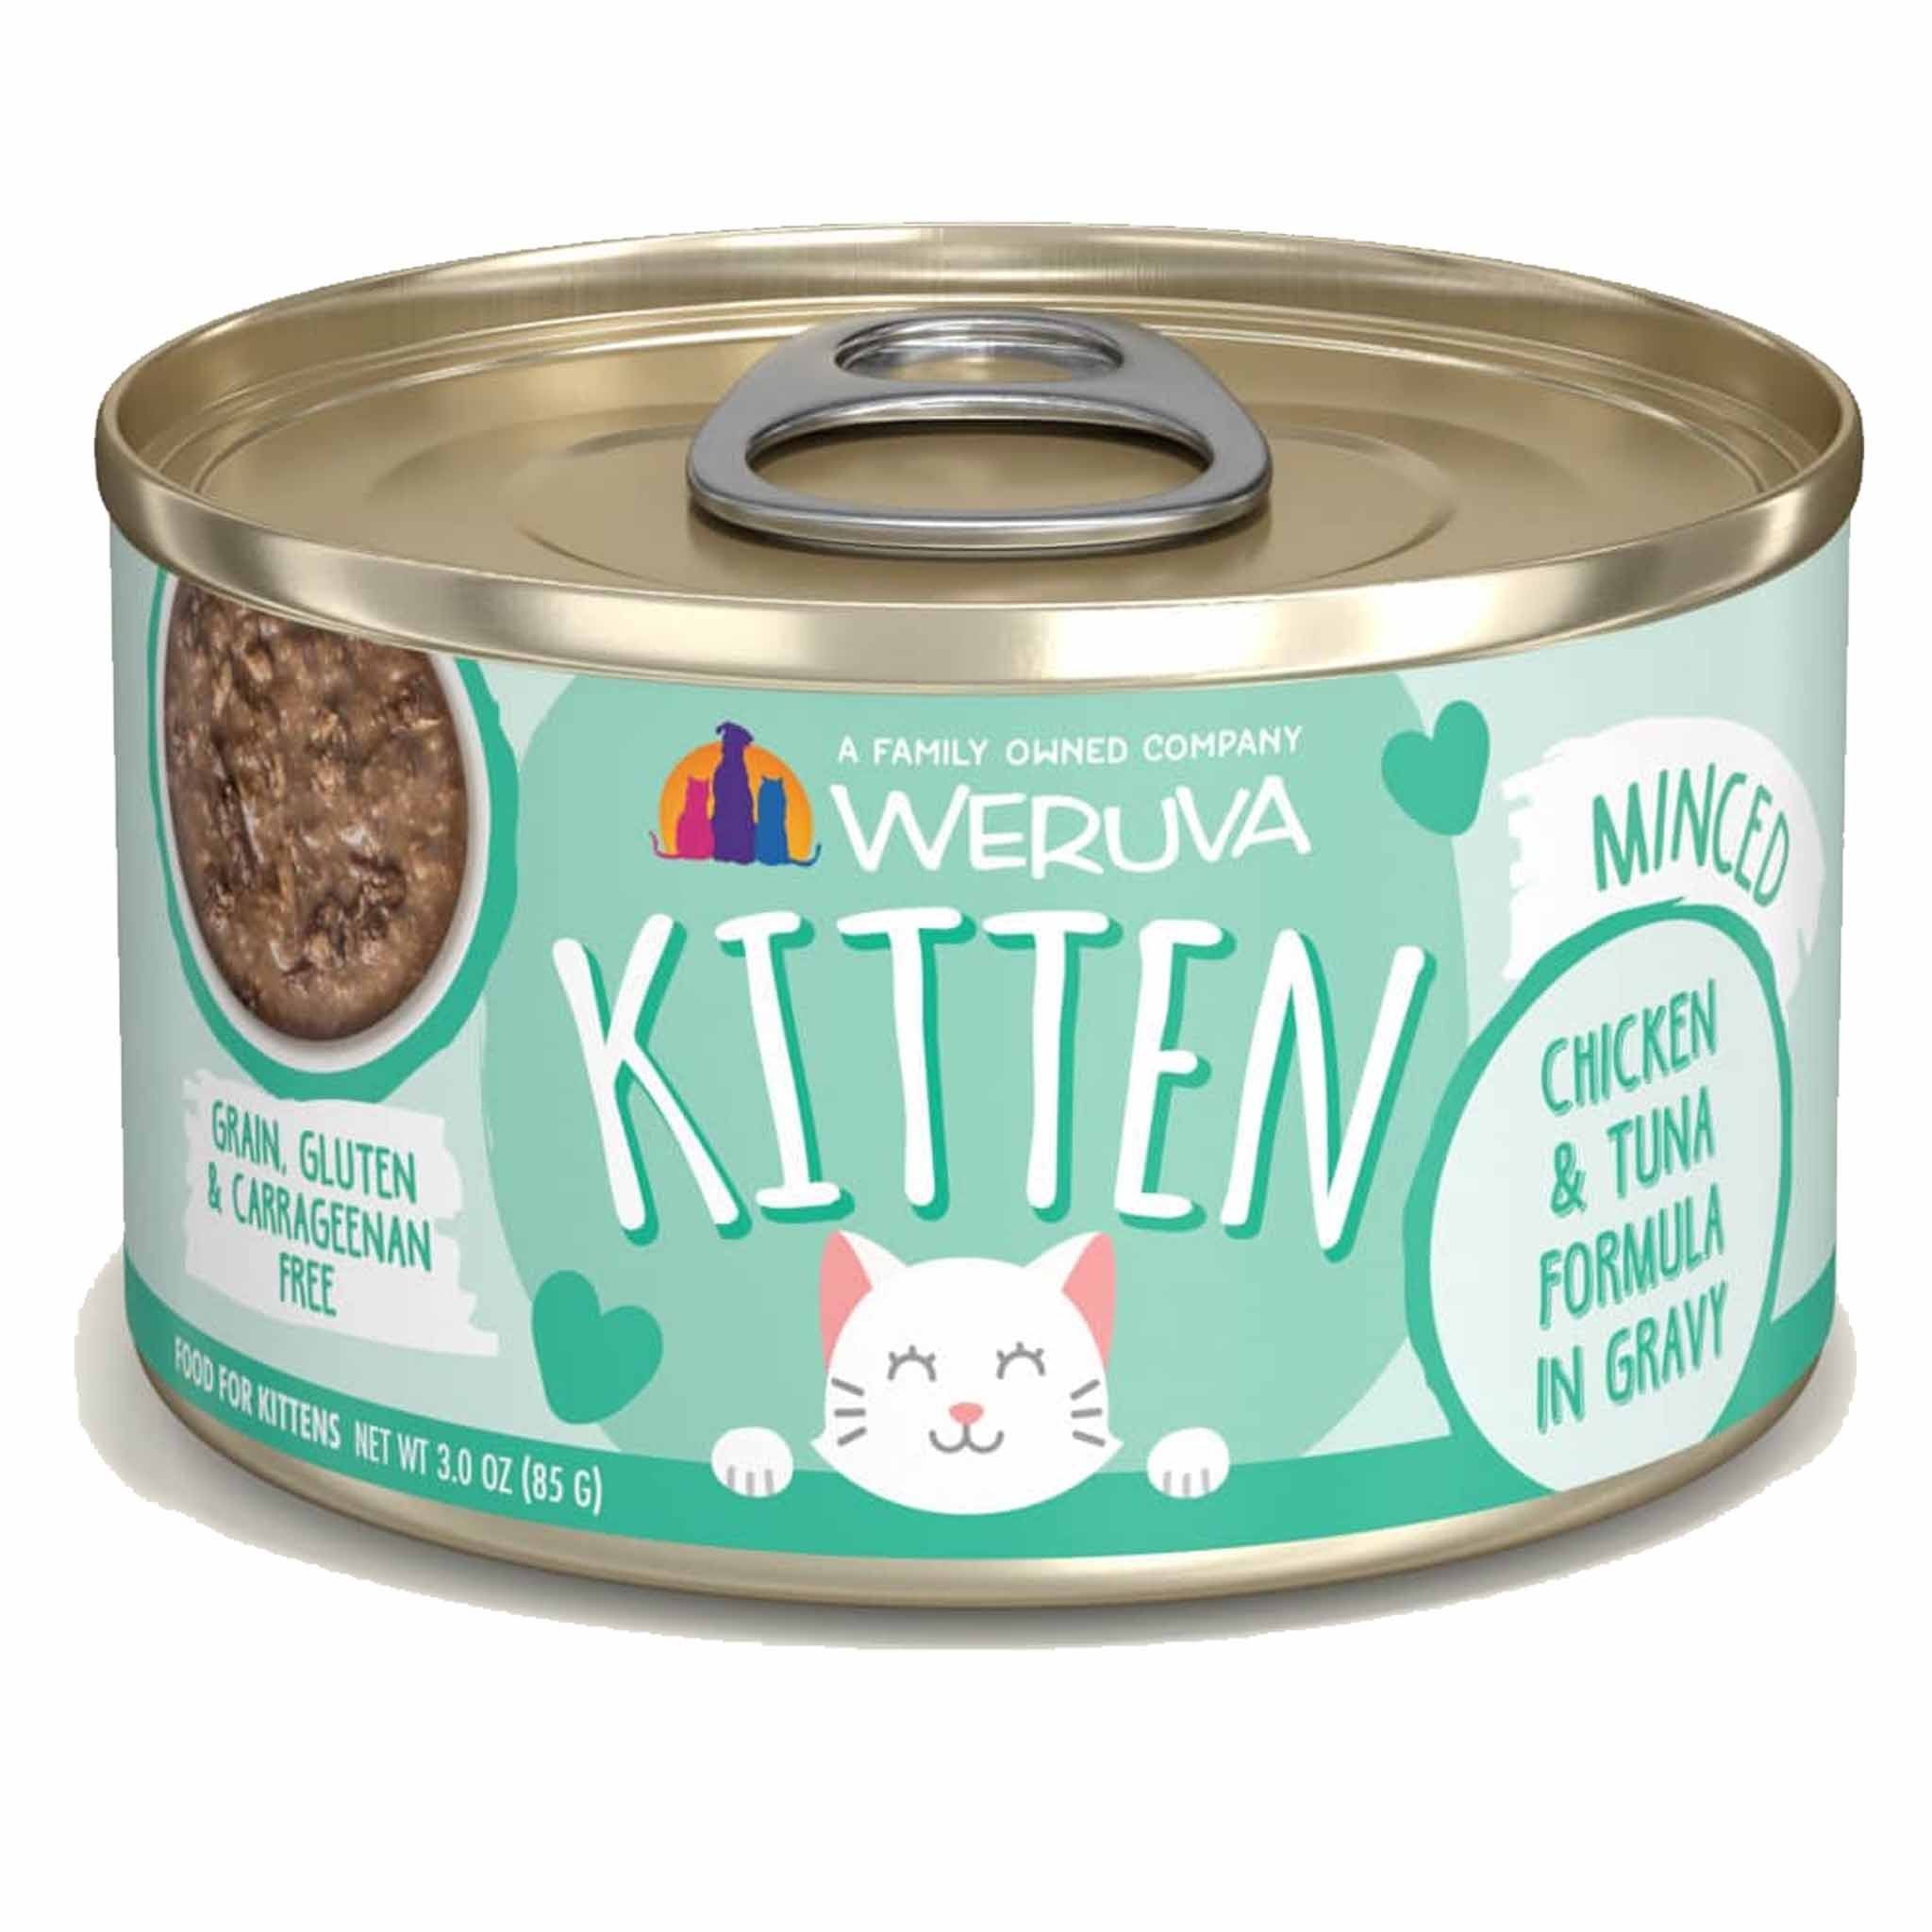 Weruva Kitten Canned Cat Food 3oz, Chicken & Tuna Formula in Gravy